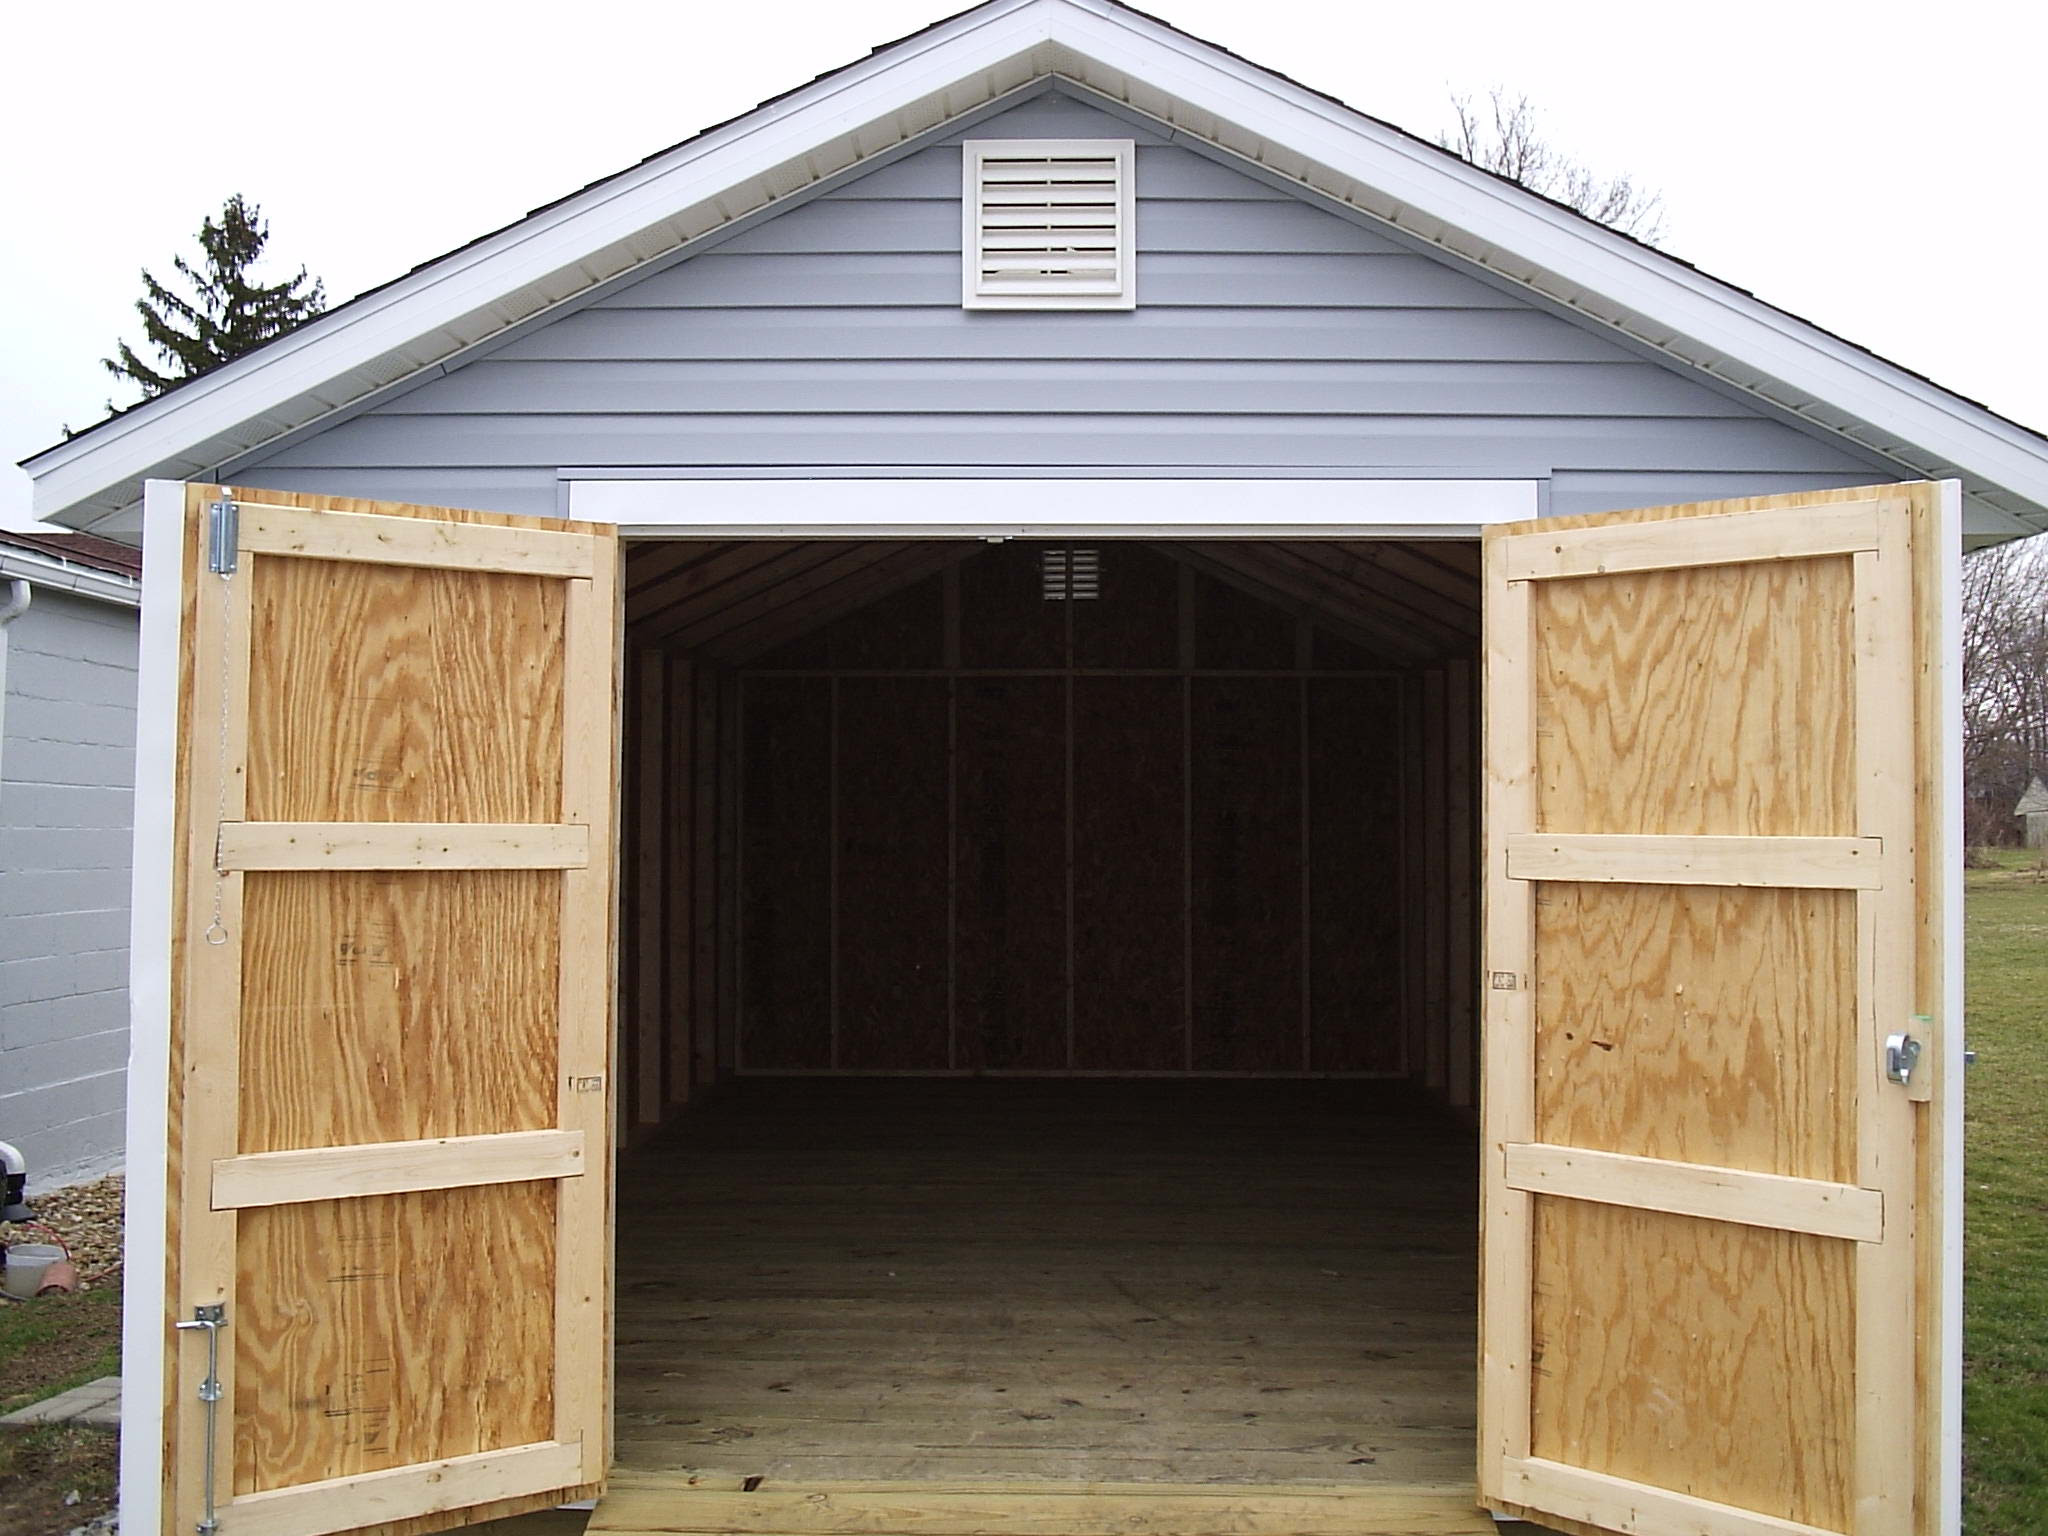 Simple wood shed plans torrent | DIY Sheds